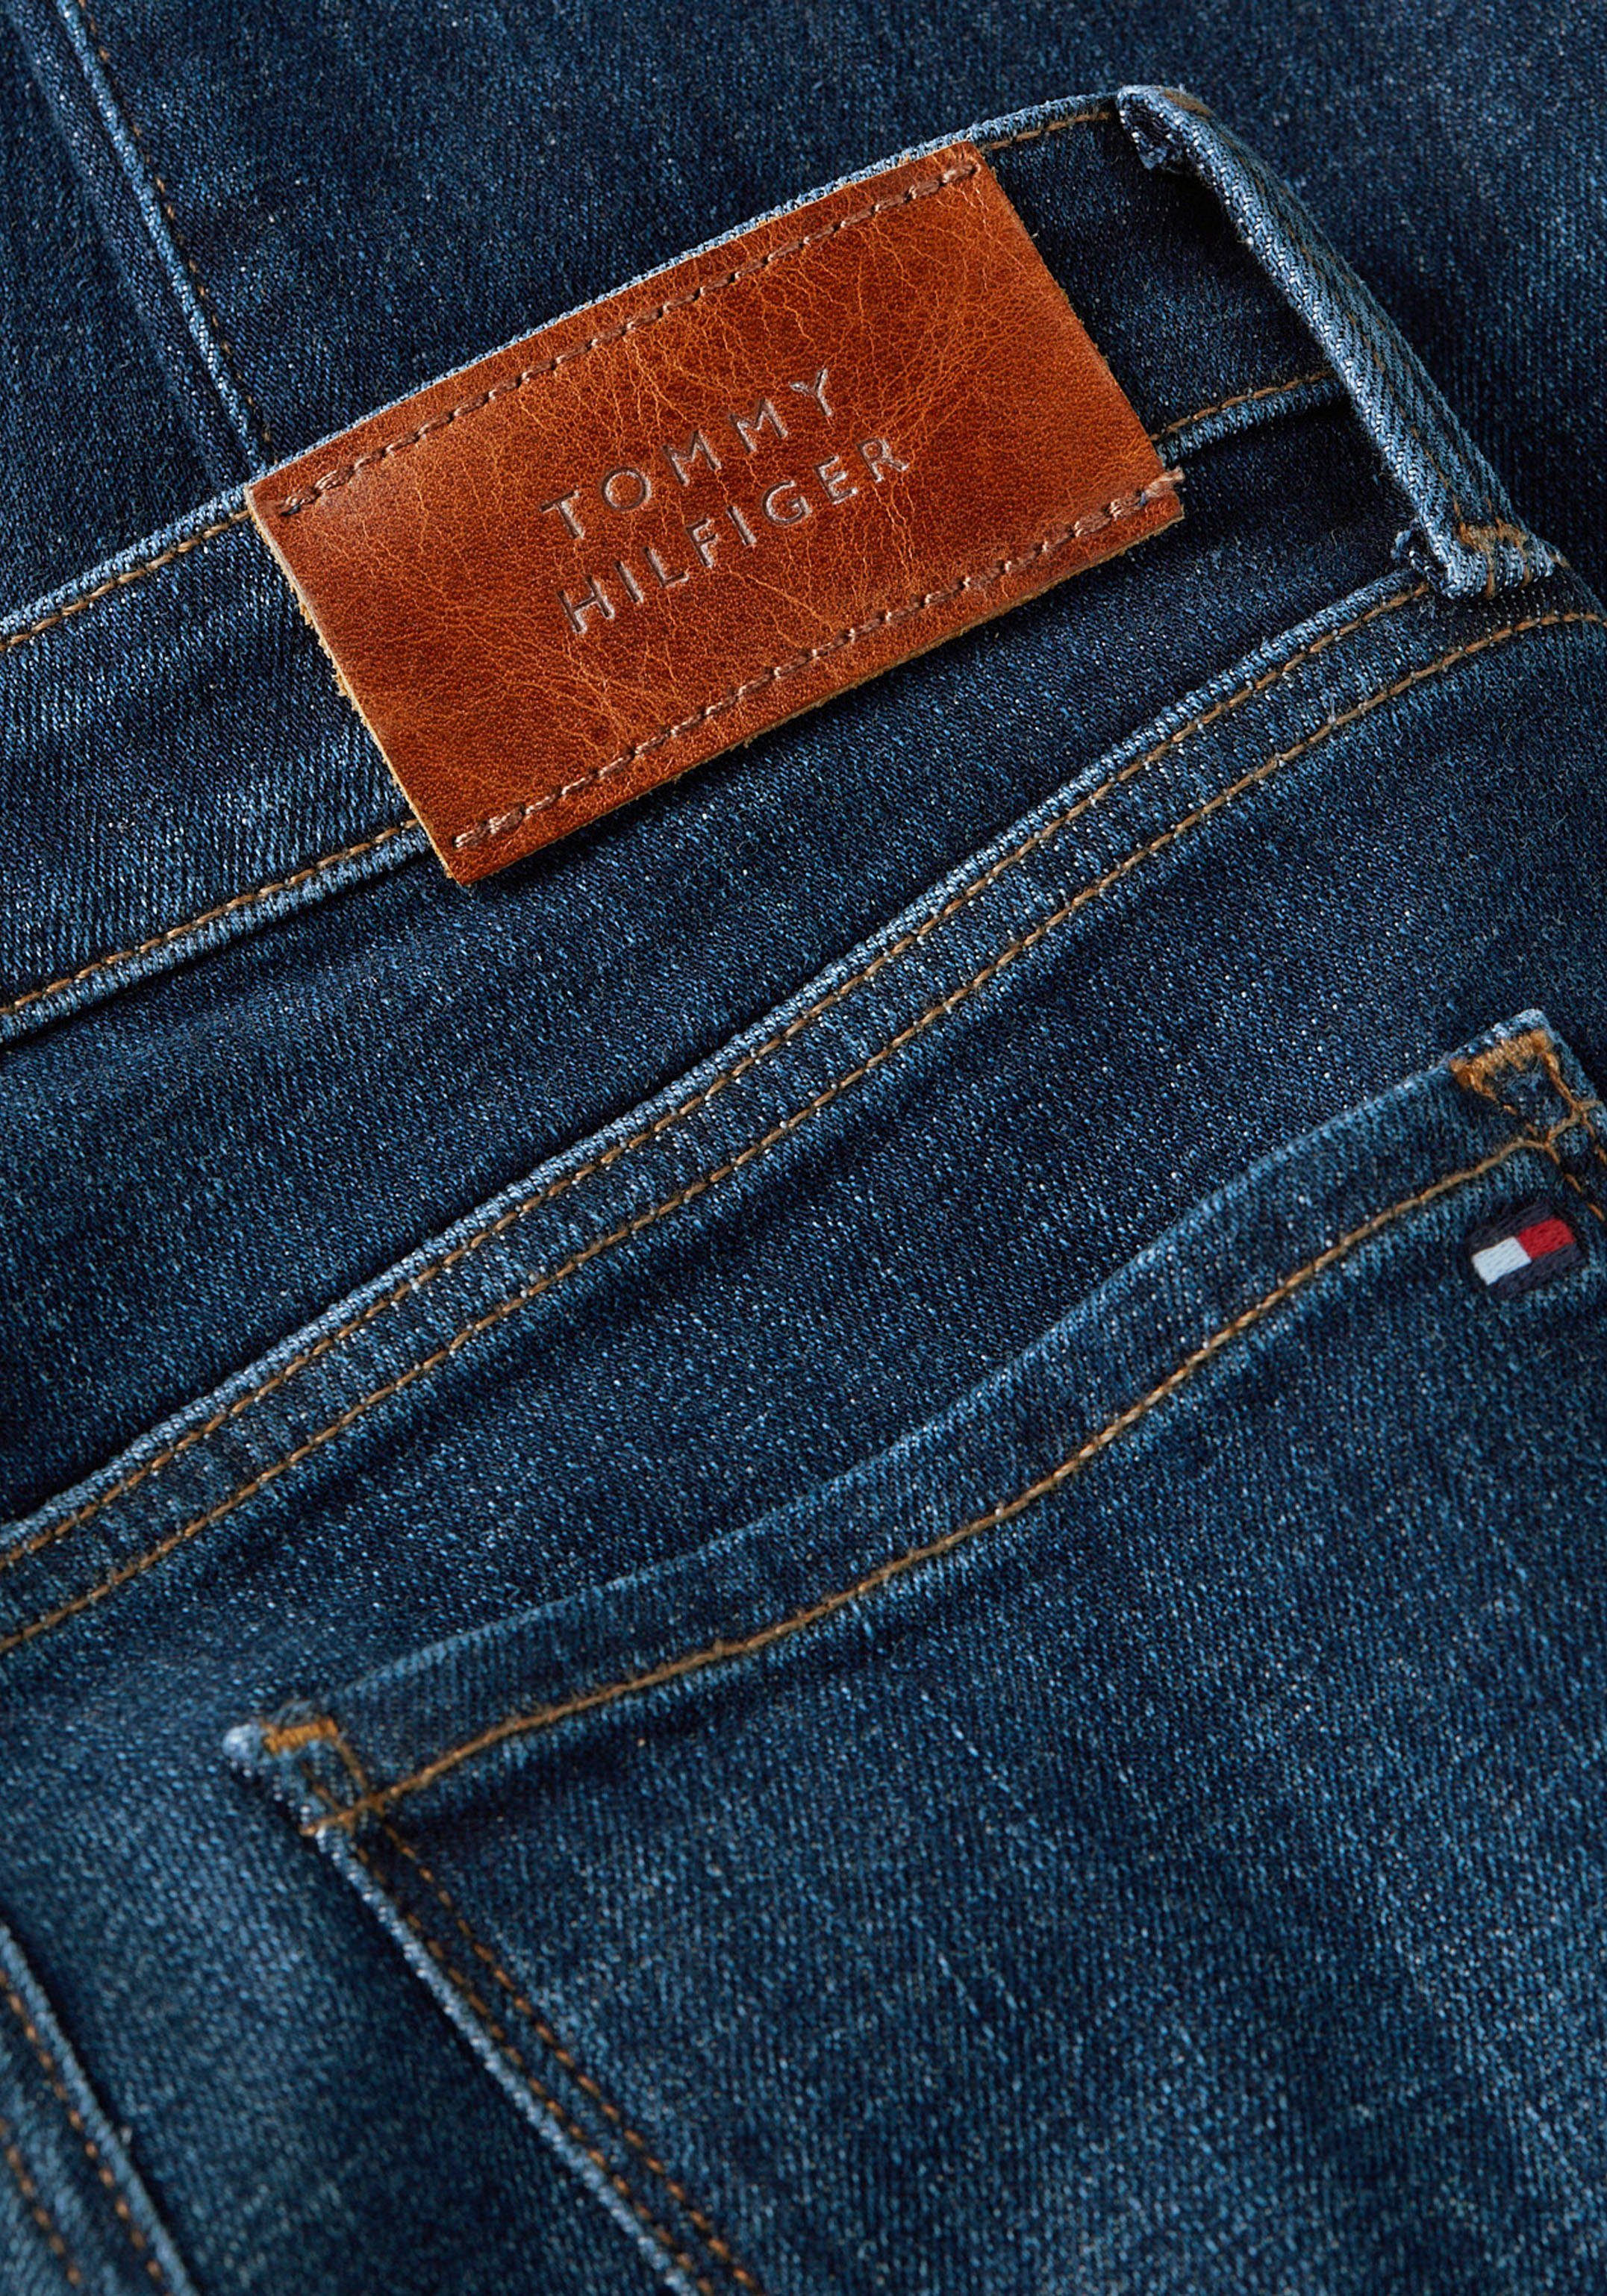 Tommy Tommy Hilfiger RW mit SKINNY TH FLEX Skinny-fit-Jeans blue2 COMO GYA dark Logo-Badge Hilfiger